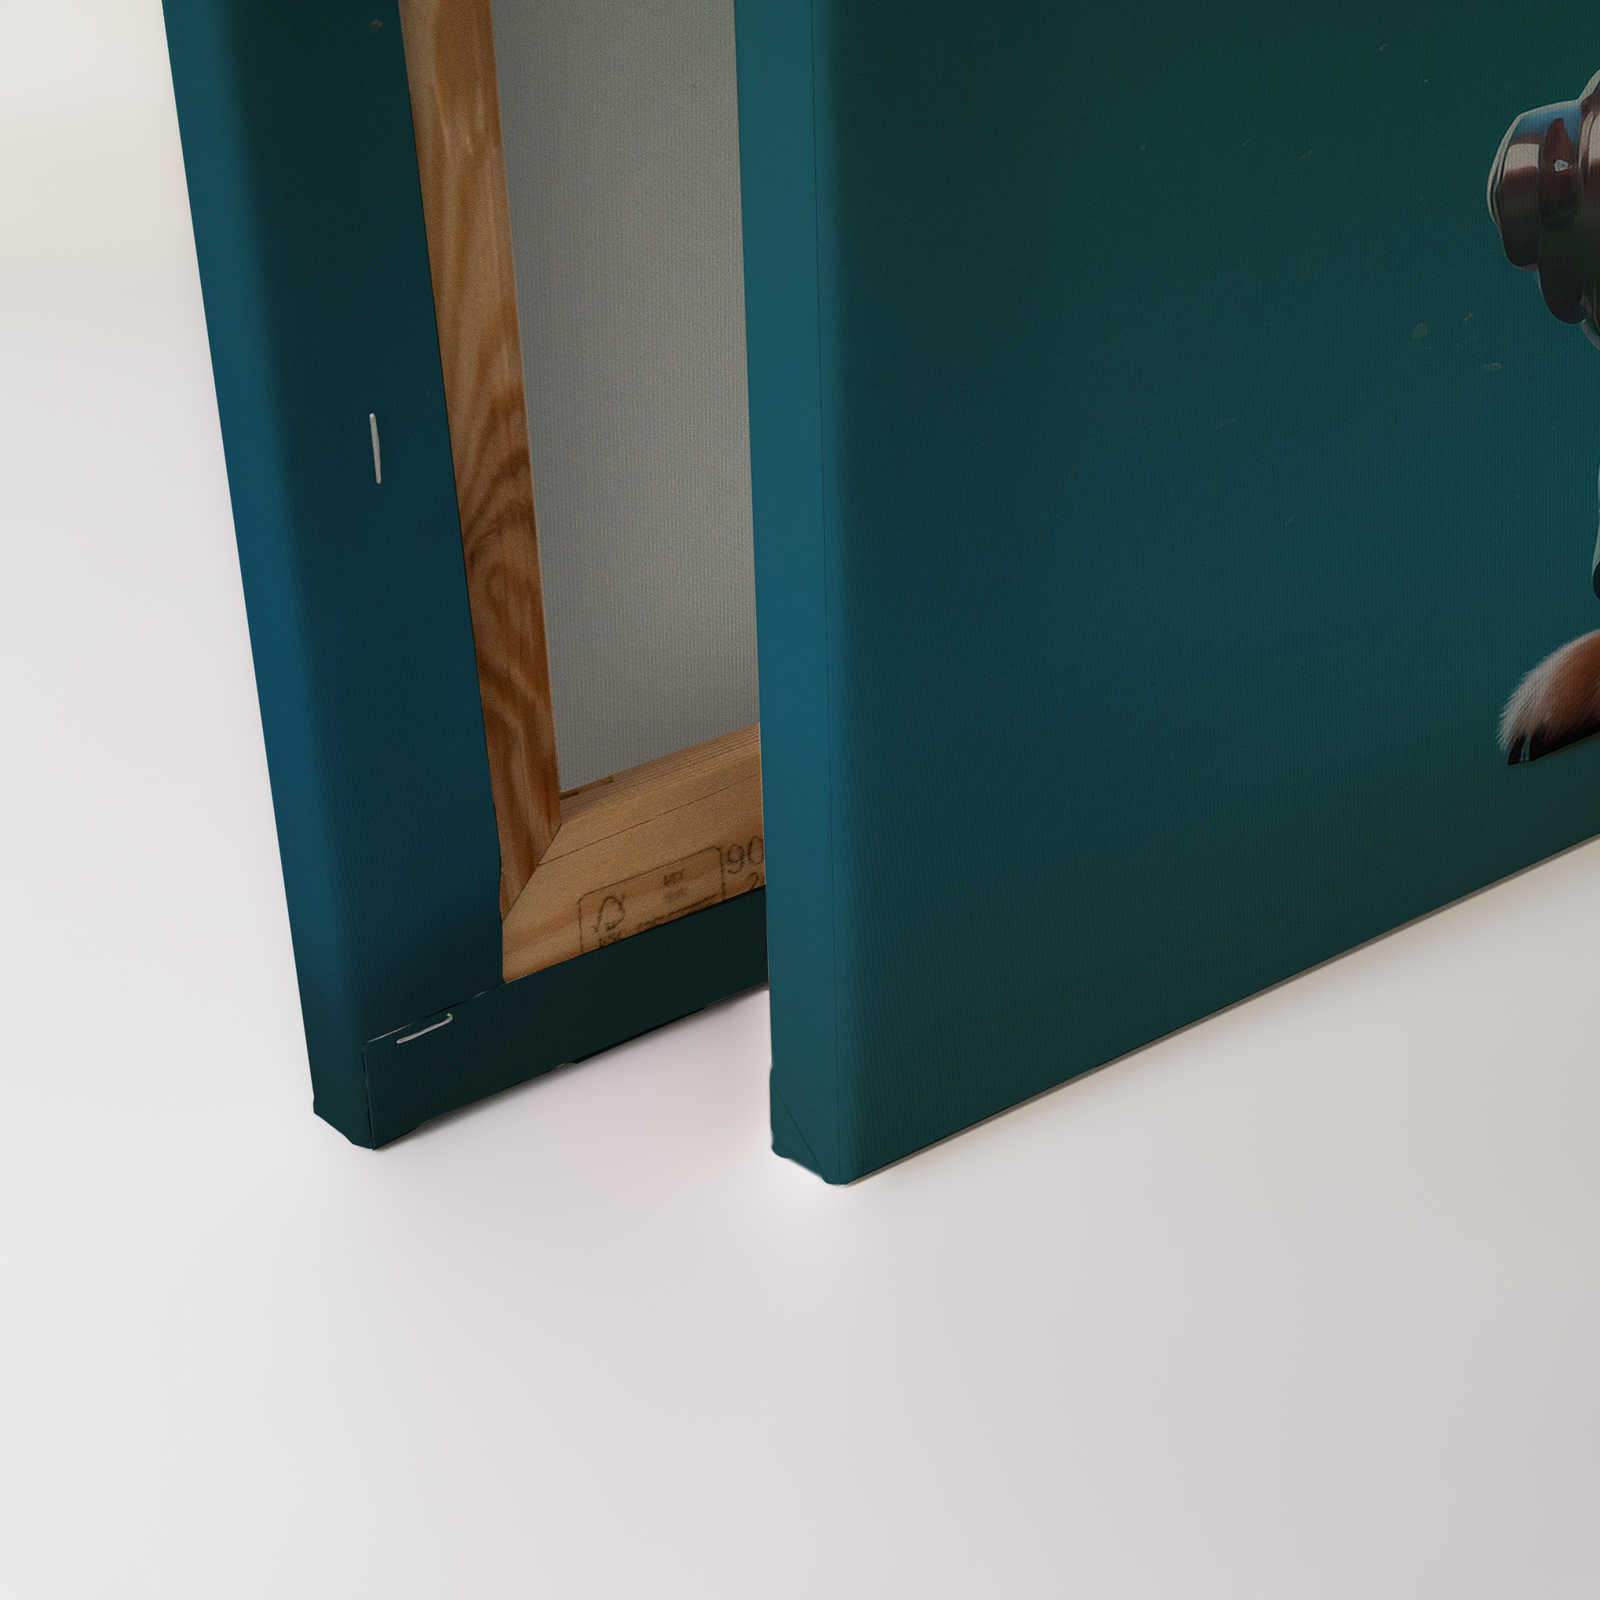             Toile KI »Cute Dogs« - 120 cm x 80 cm
        